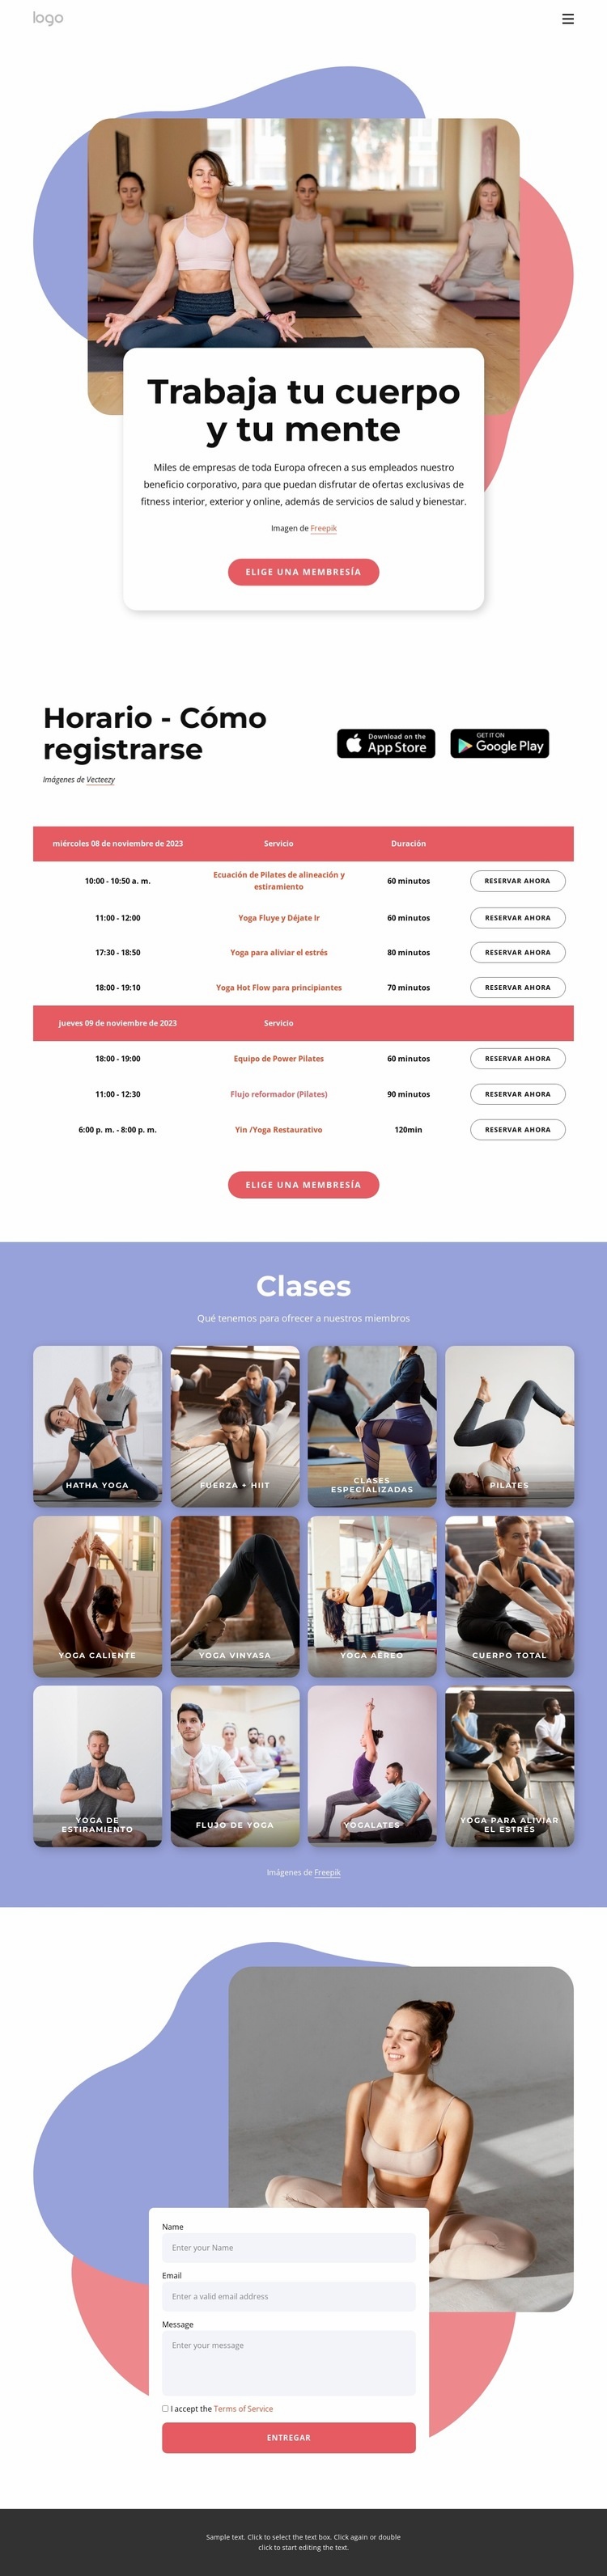 Disfruta del pilates y el yoga Maqueta de sitio web